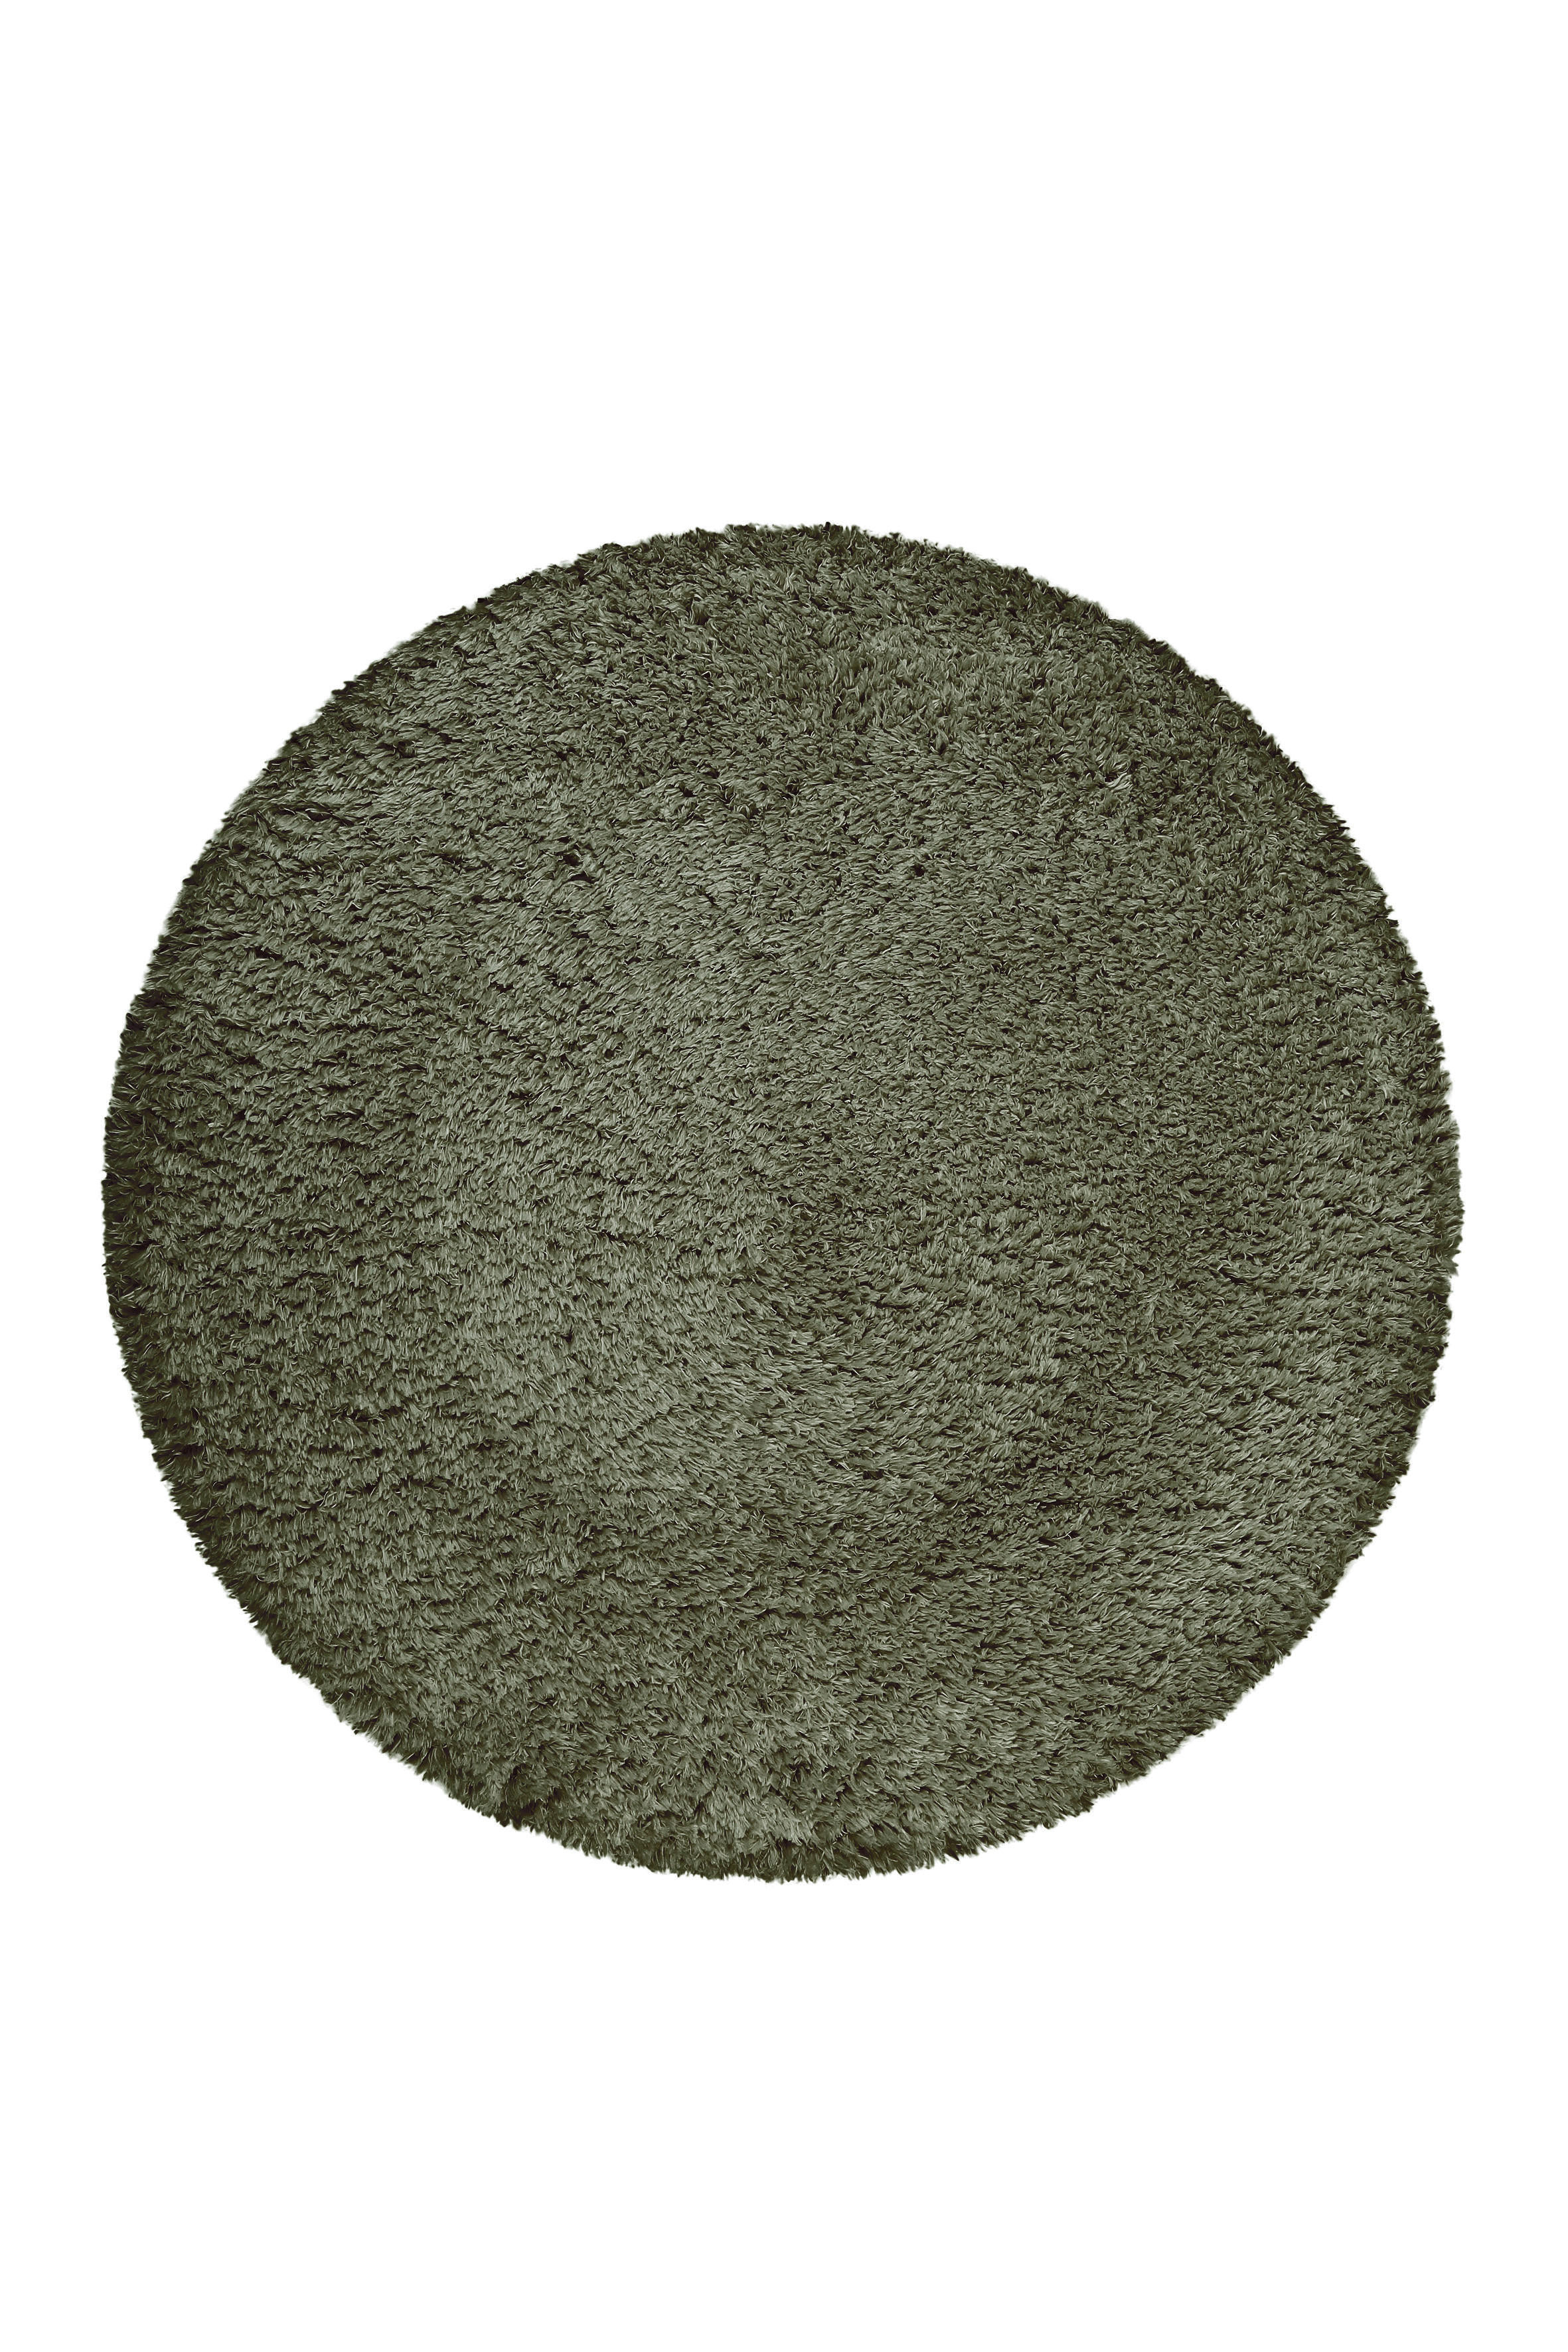 HOCHFLORTEPPICH 80 cm Yogi  - Olivgrün, KONVENTIONELL, Textil (80cm) - Esprit